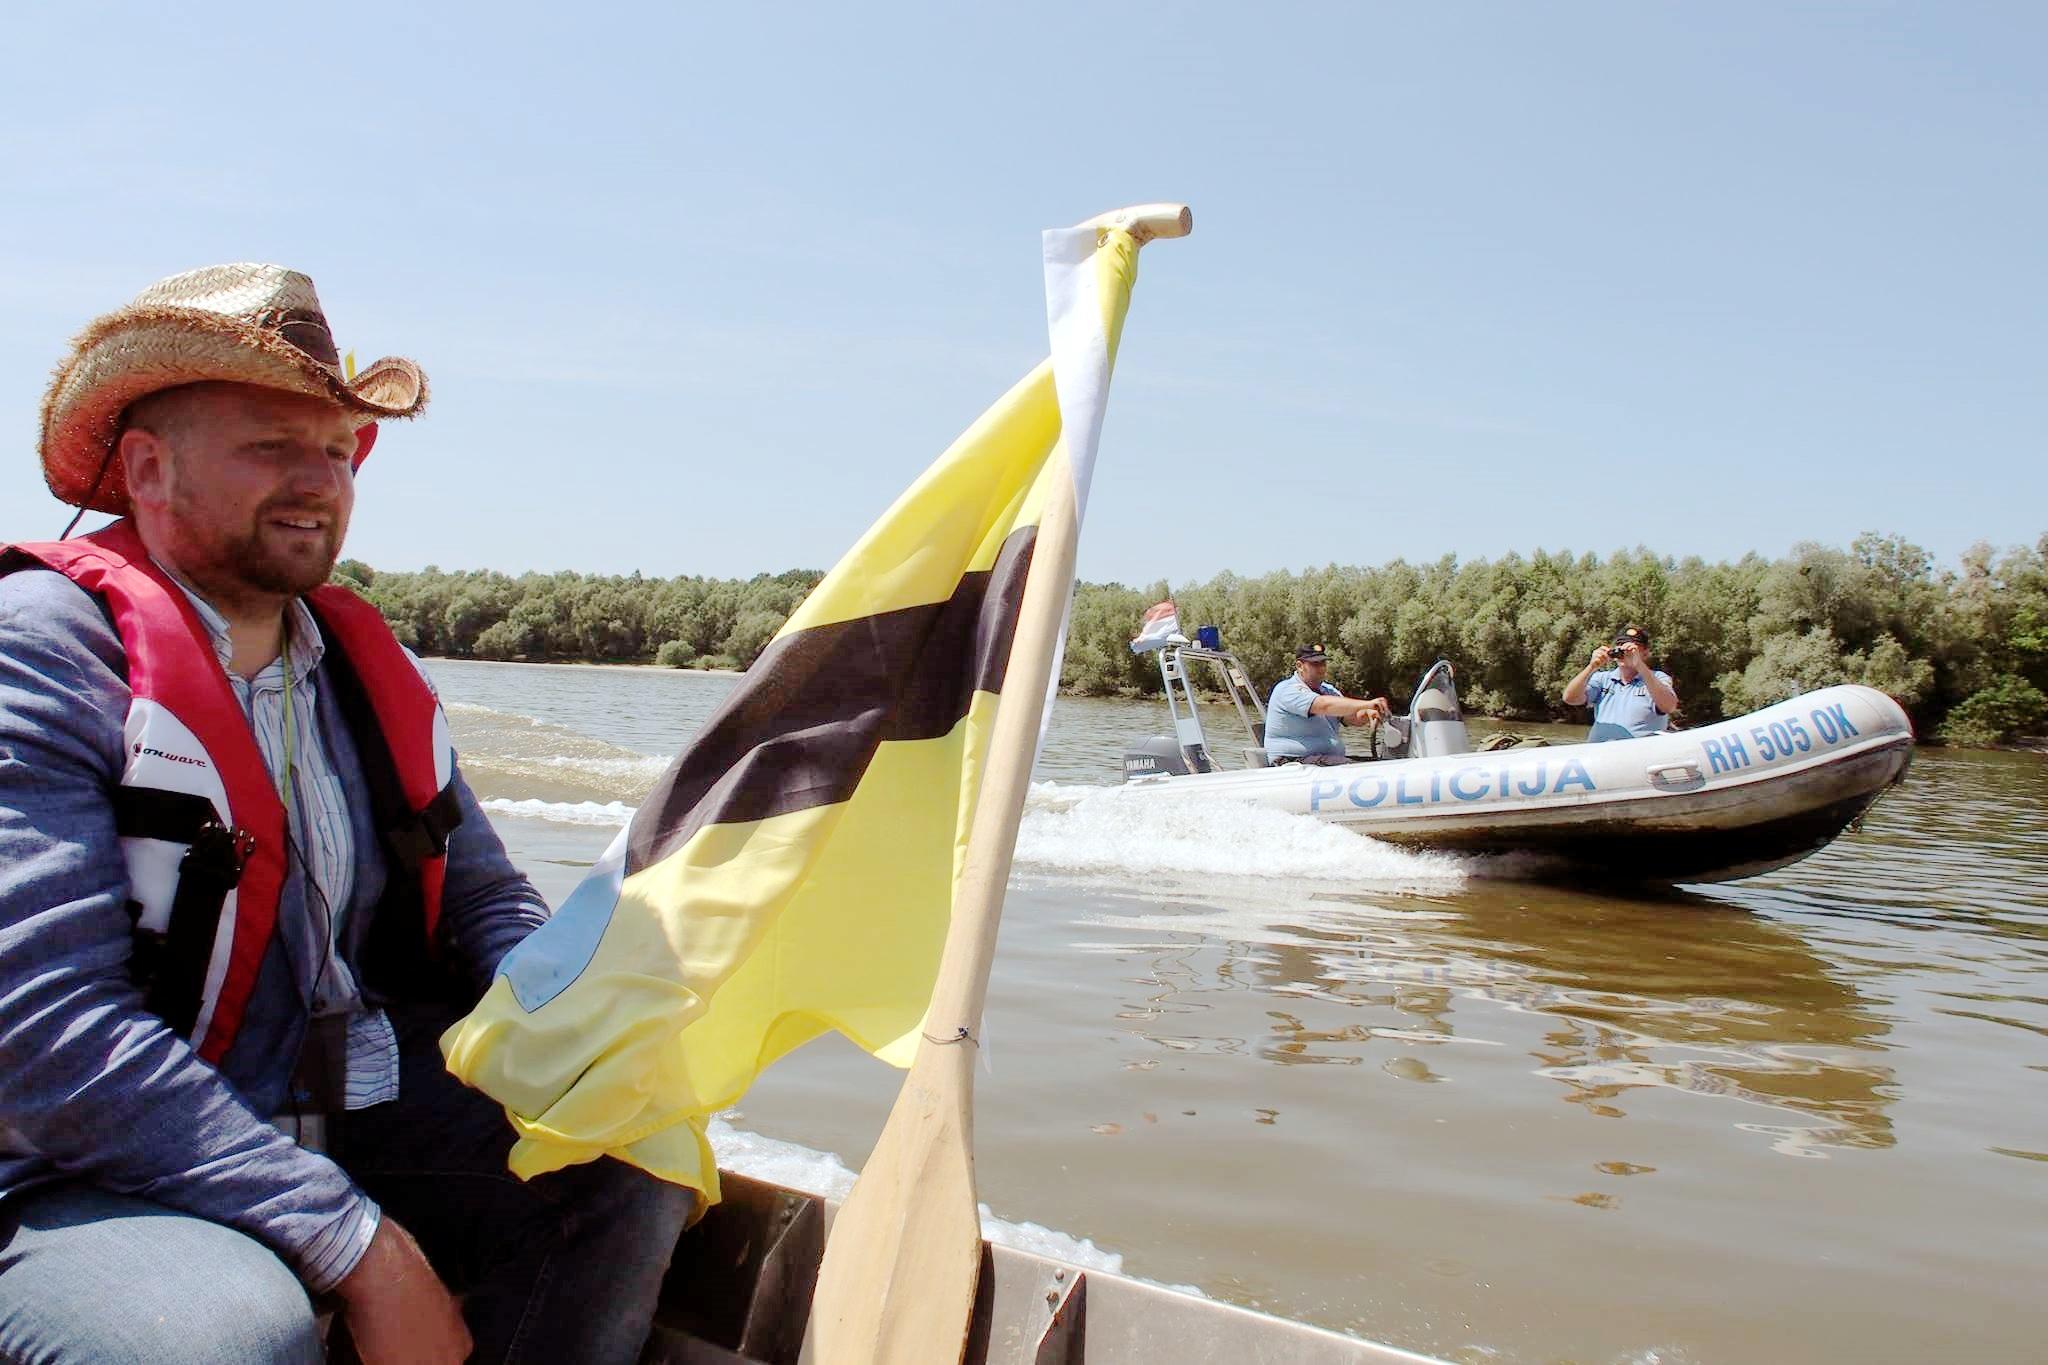 Vit Jedlička vuole che Liberland sia un esempio di buon governo per tutti gli altri paesi del mondo.